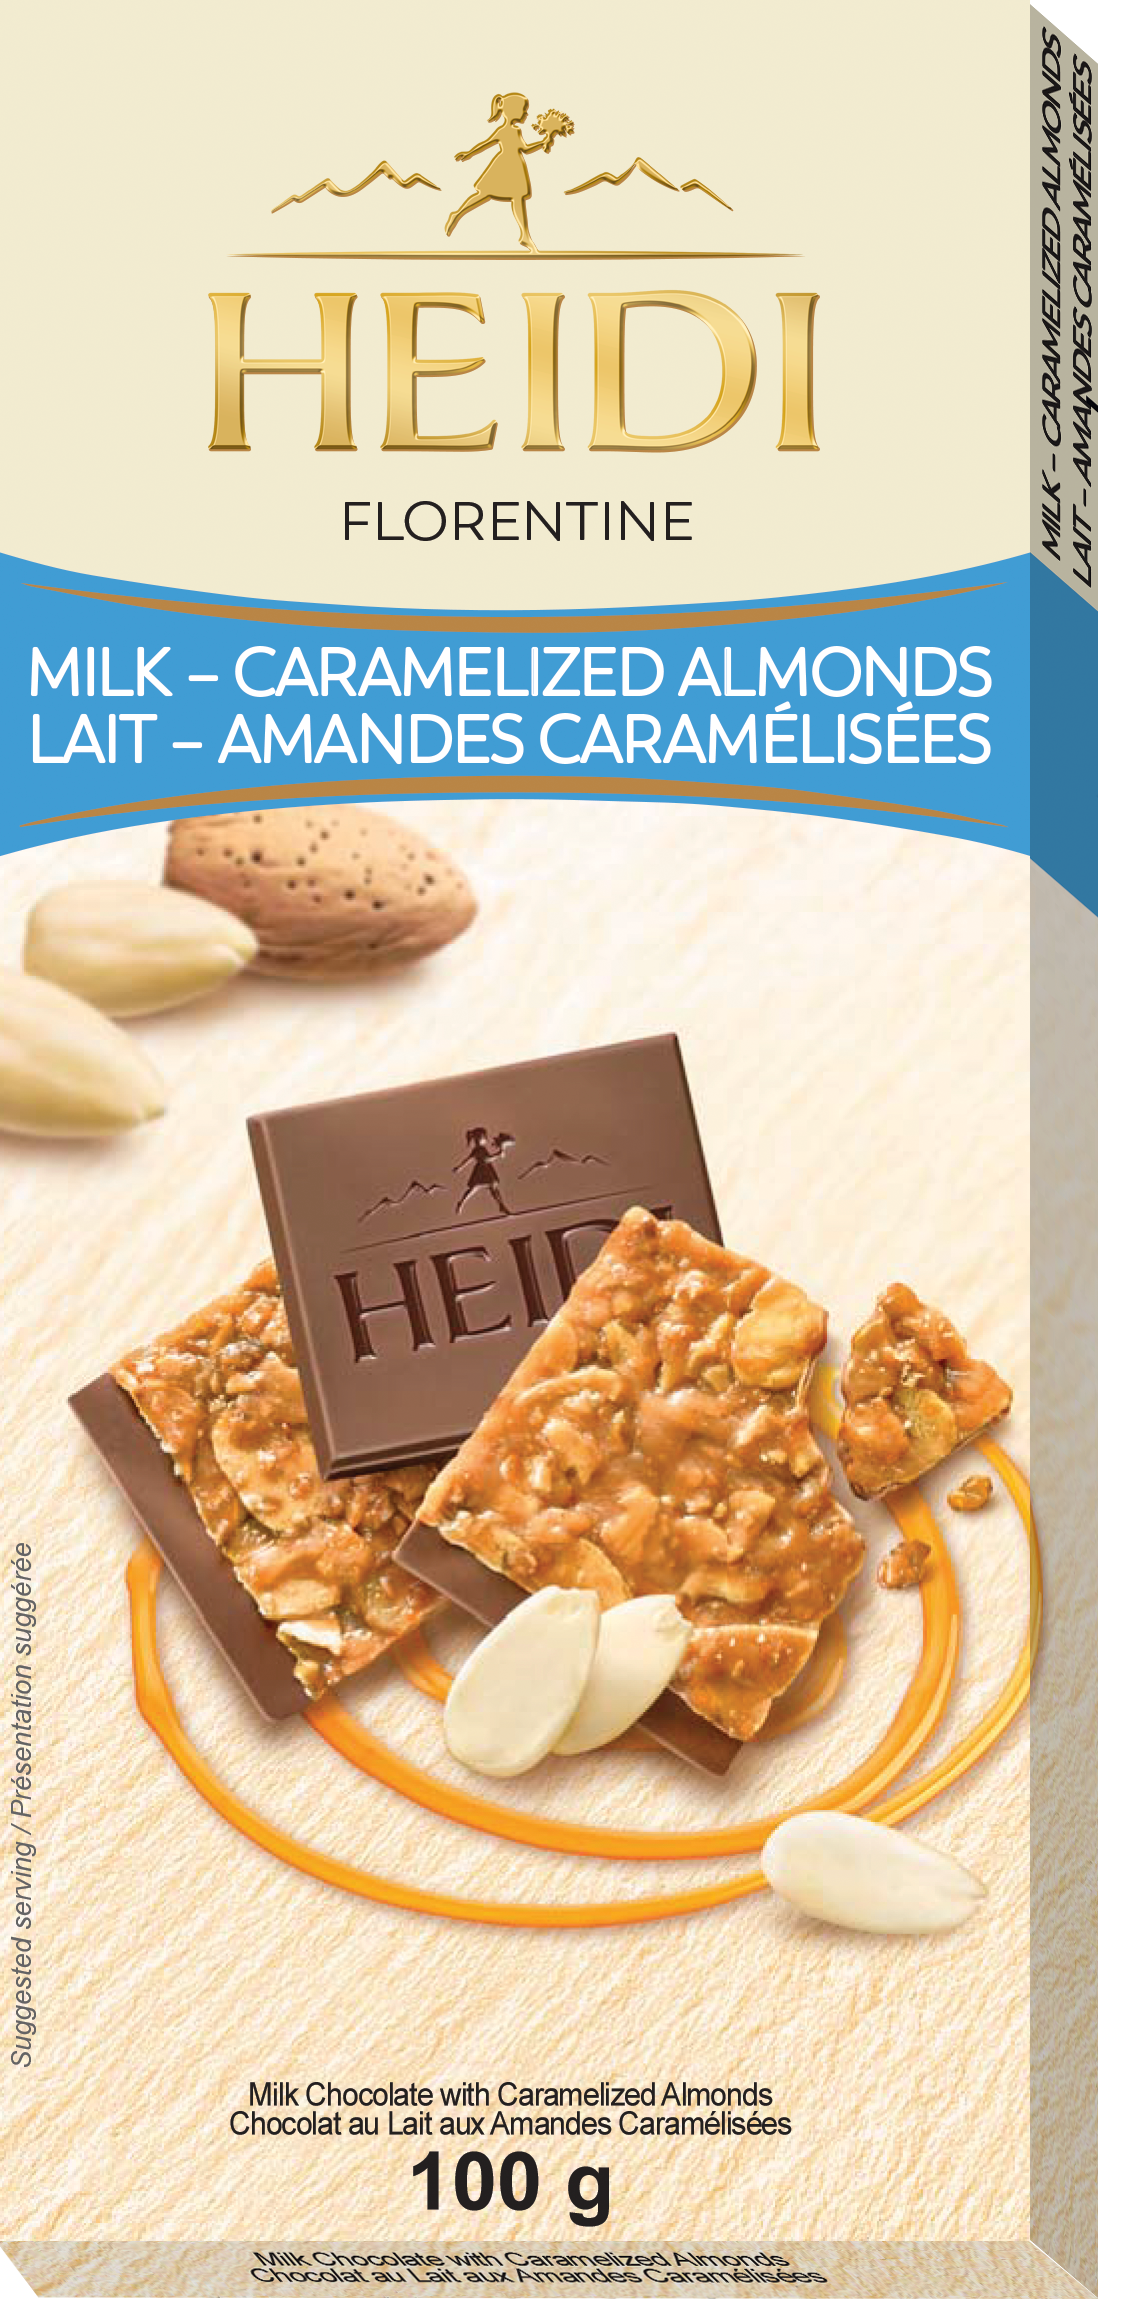 Heidi Milk Chocolate with Caramelized Almonds